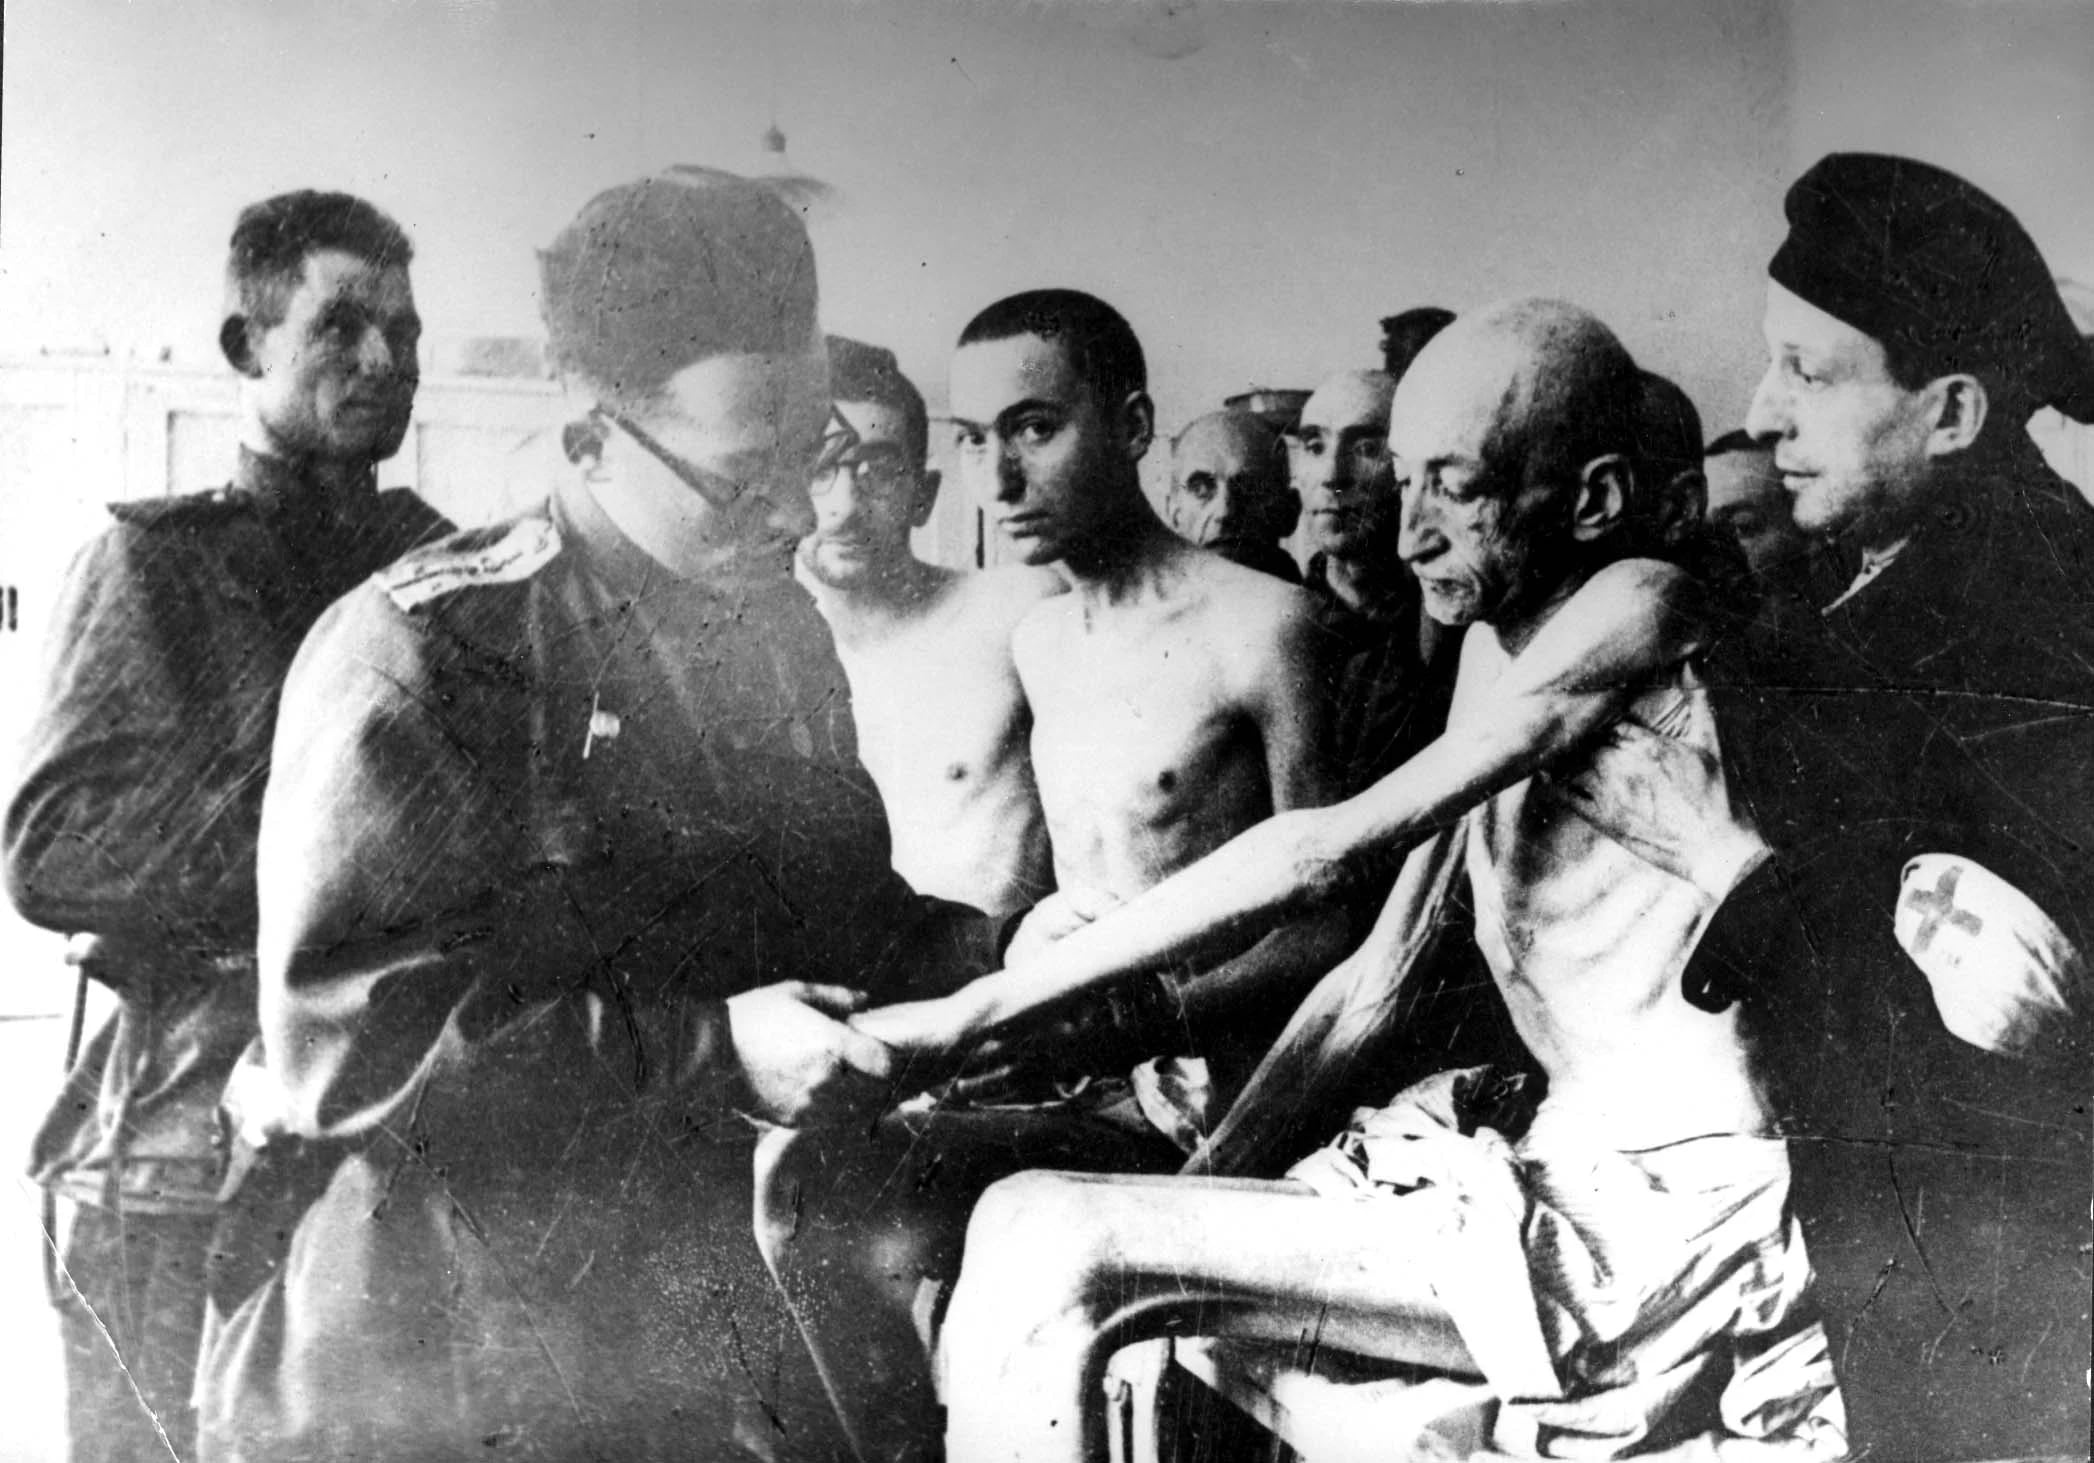 En su obsesión por la eugenesia, Mengele se interesó especialmente en lo que consideraba anomalías y realizó intervenciones médicas y quirúrgicas de extrema crueldad. (Yad Vashem Archives/via REUTERS)